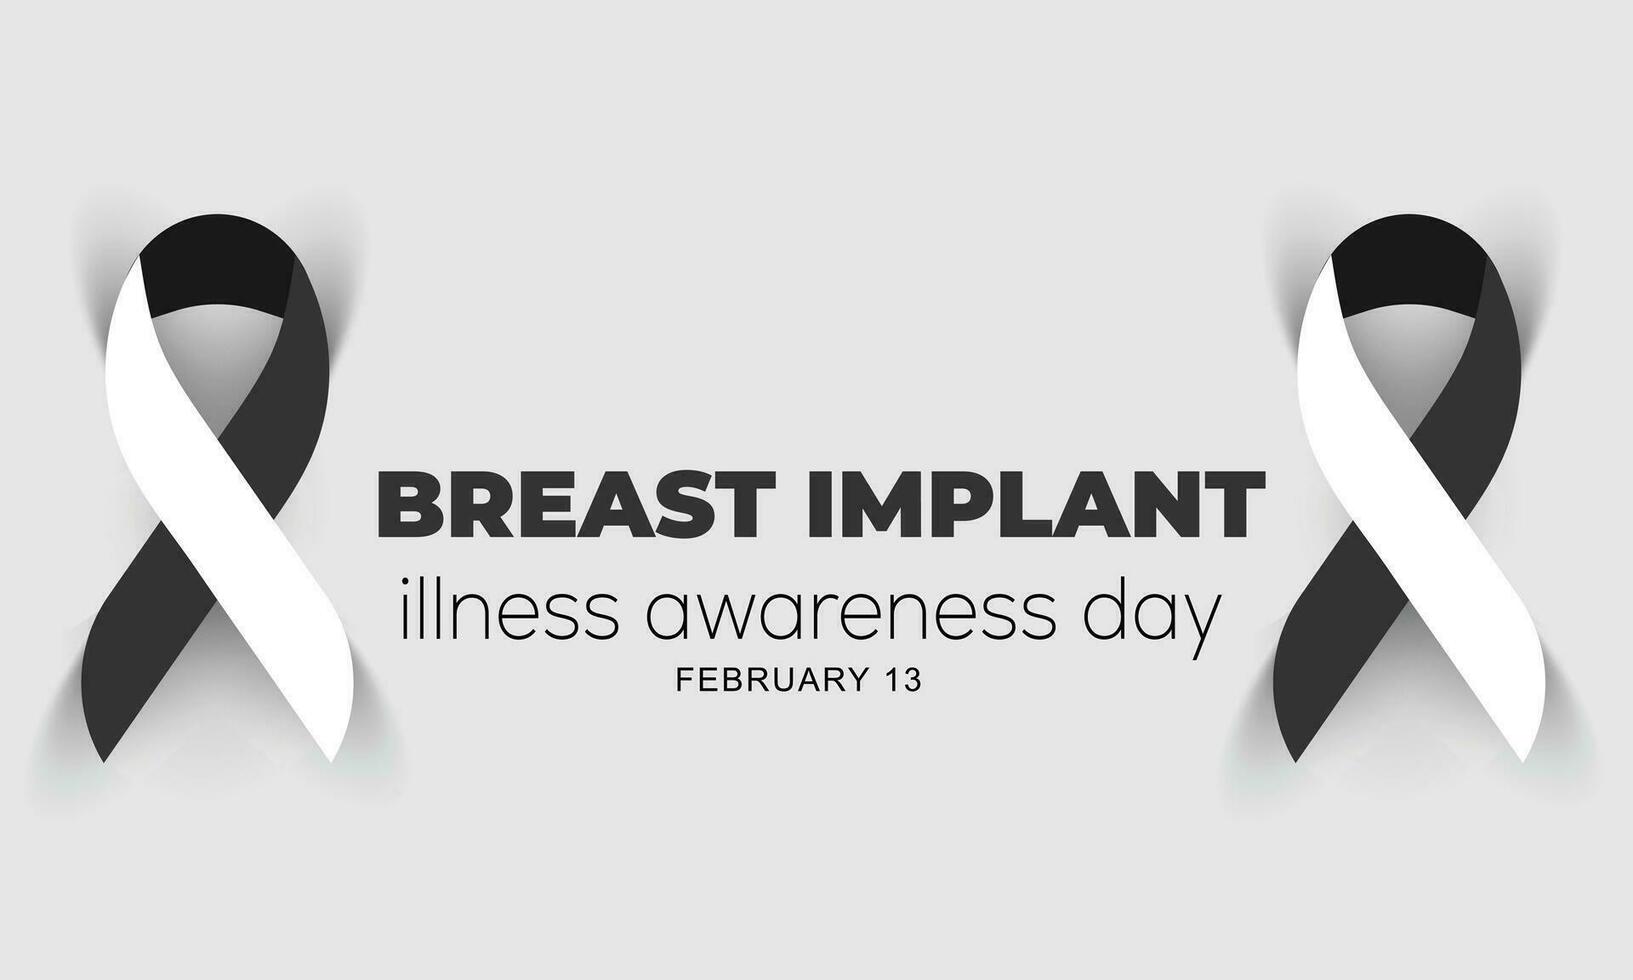 bröst implantera sjukdom medvetenhet dag. bakgrund, baner, kort, affisch, mall. vektor illustration.